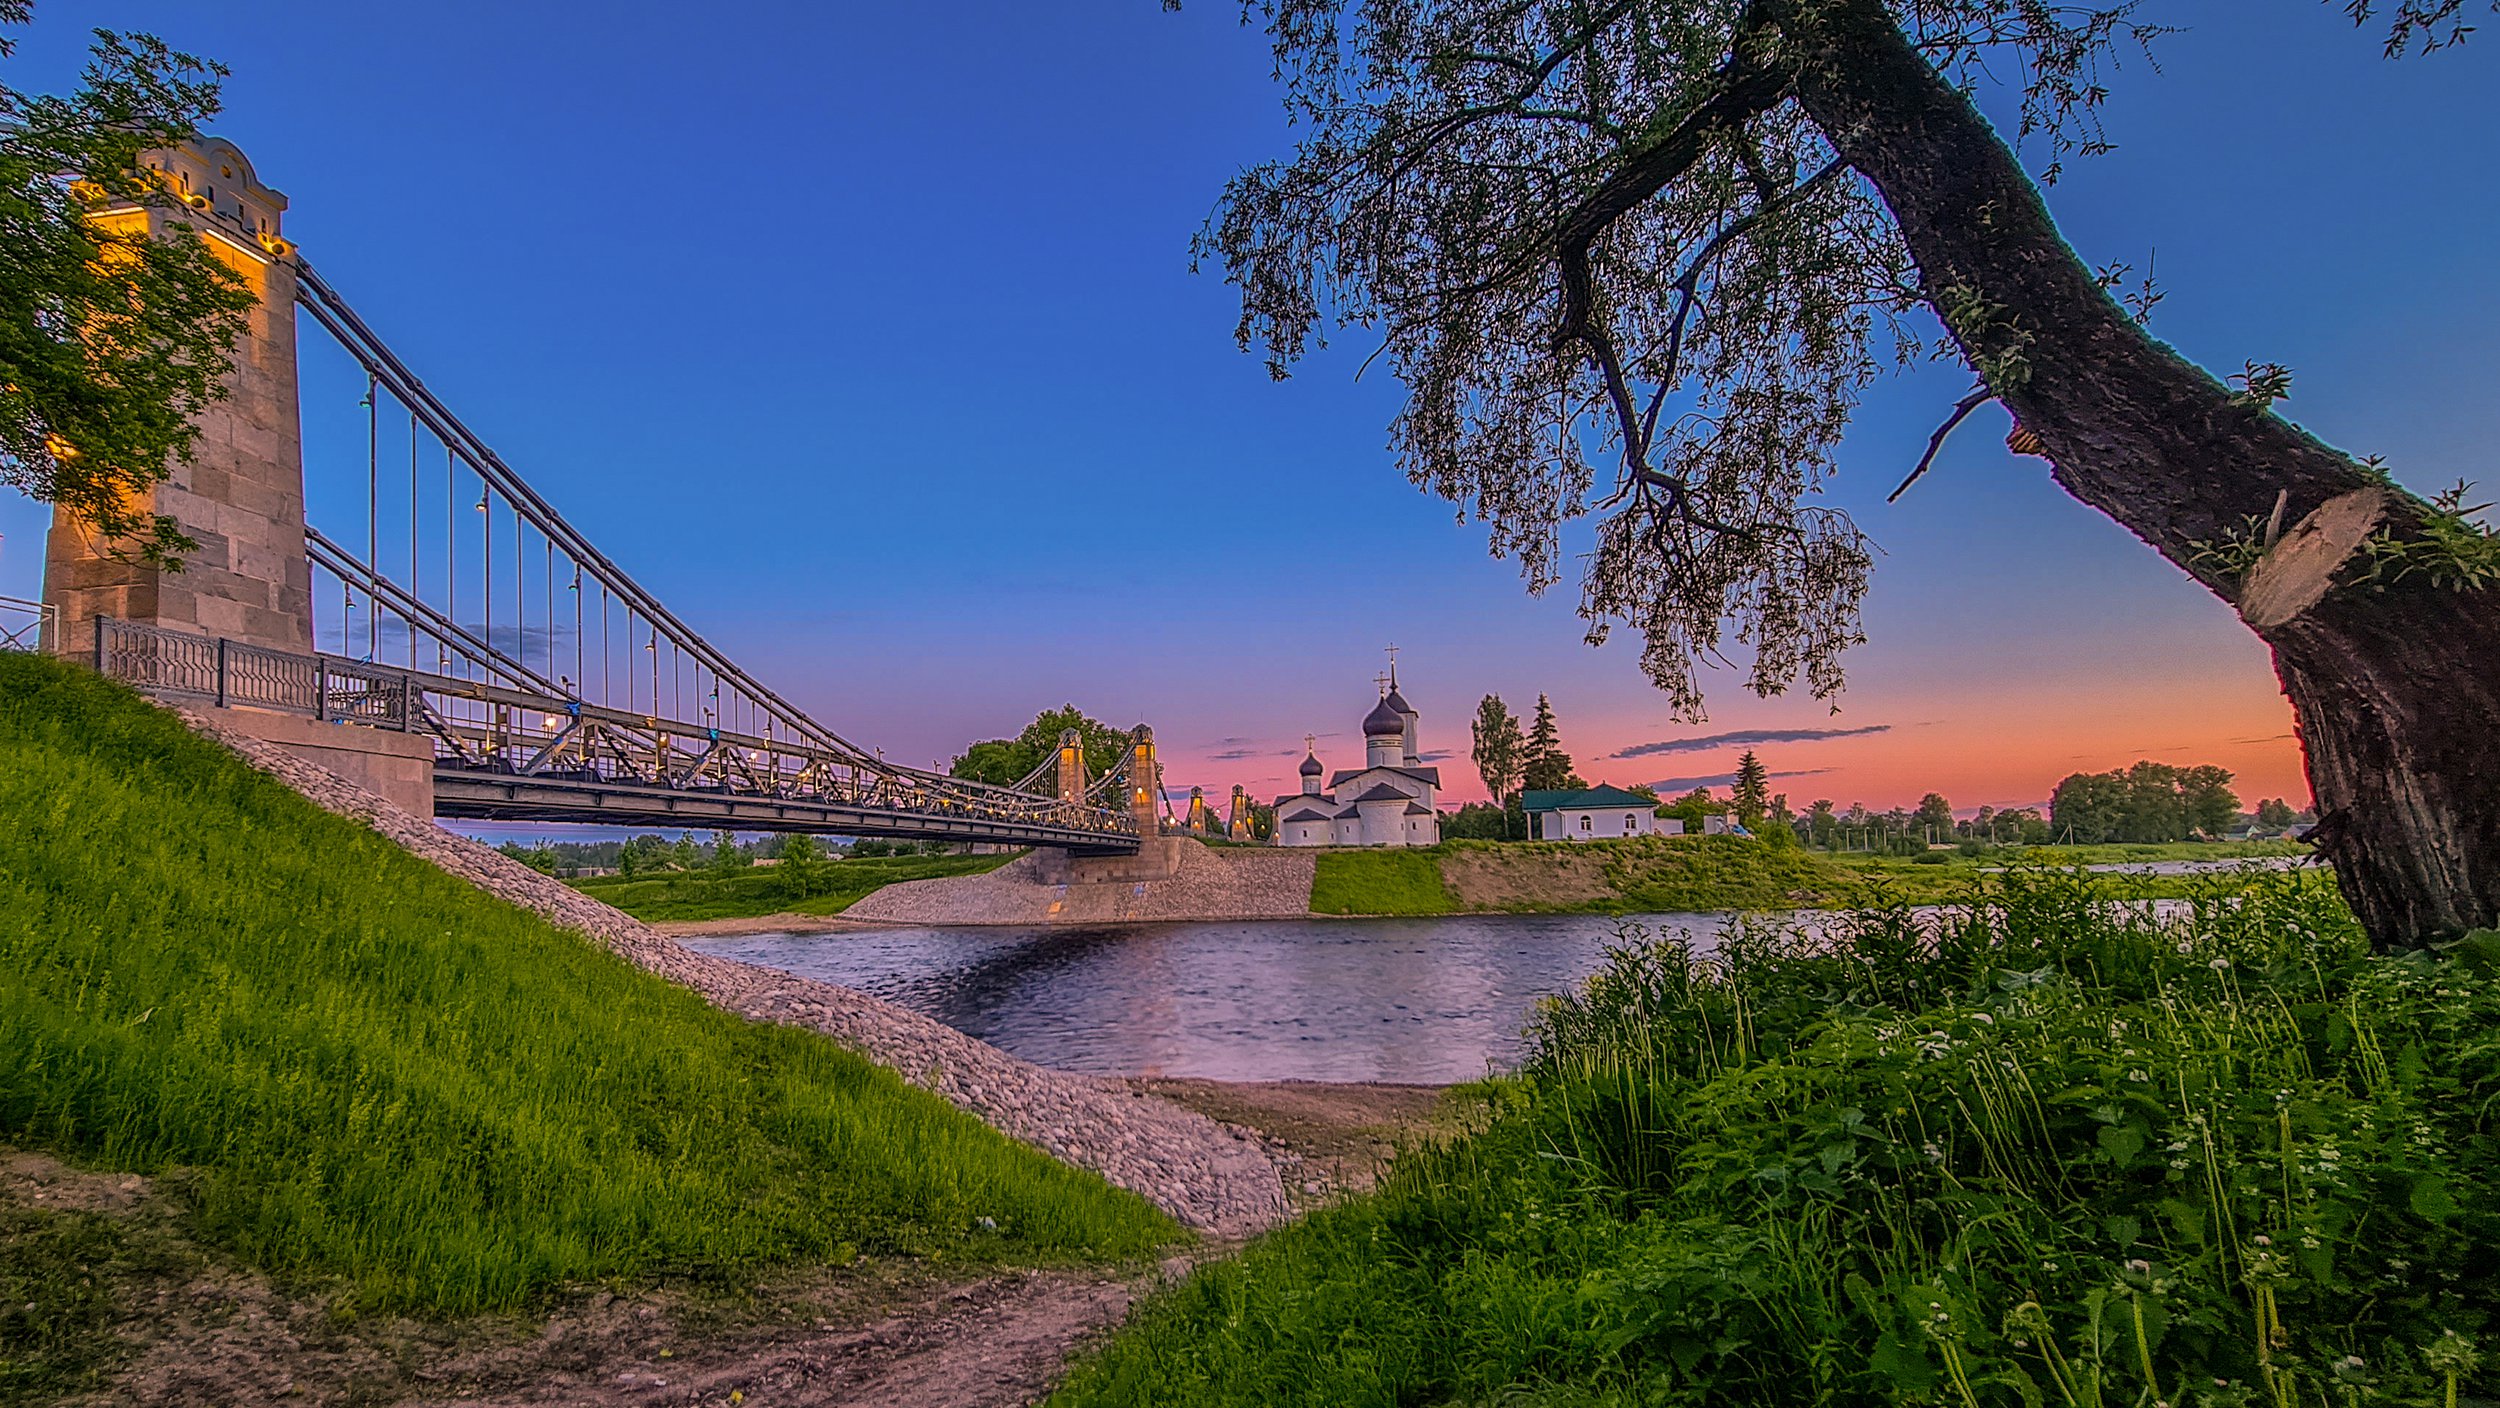 Отреставрированные мосты через реку Великая в городе Остров — единственные цепные транспортные мосты середины XIX века, сохранившиеся на территории России.